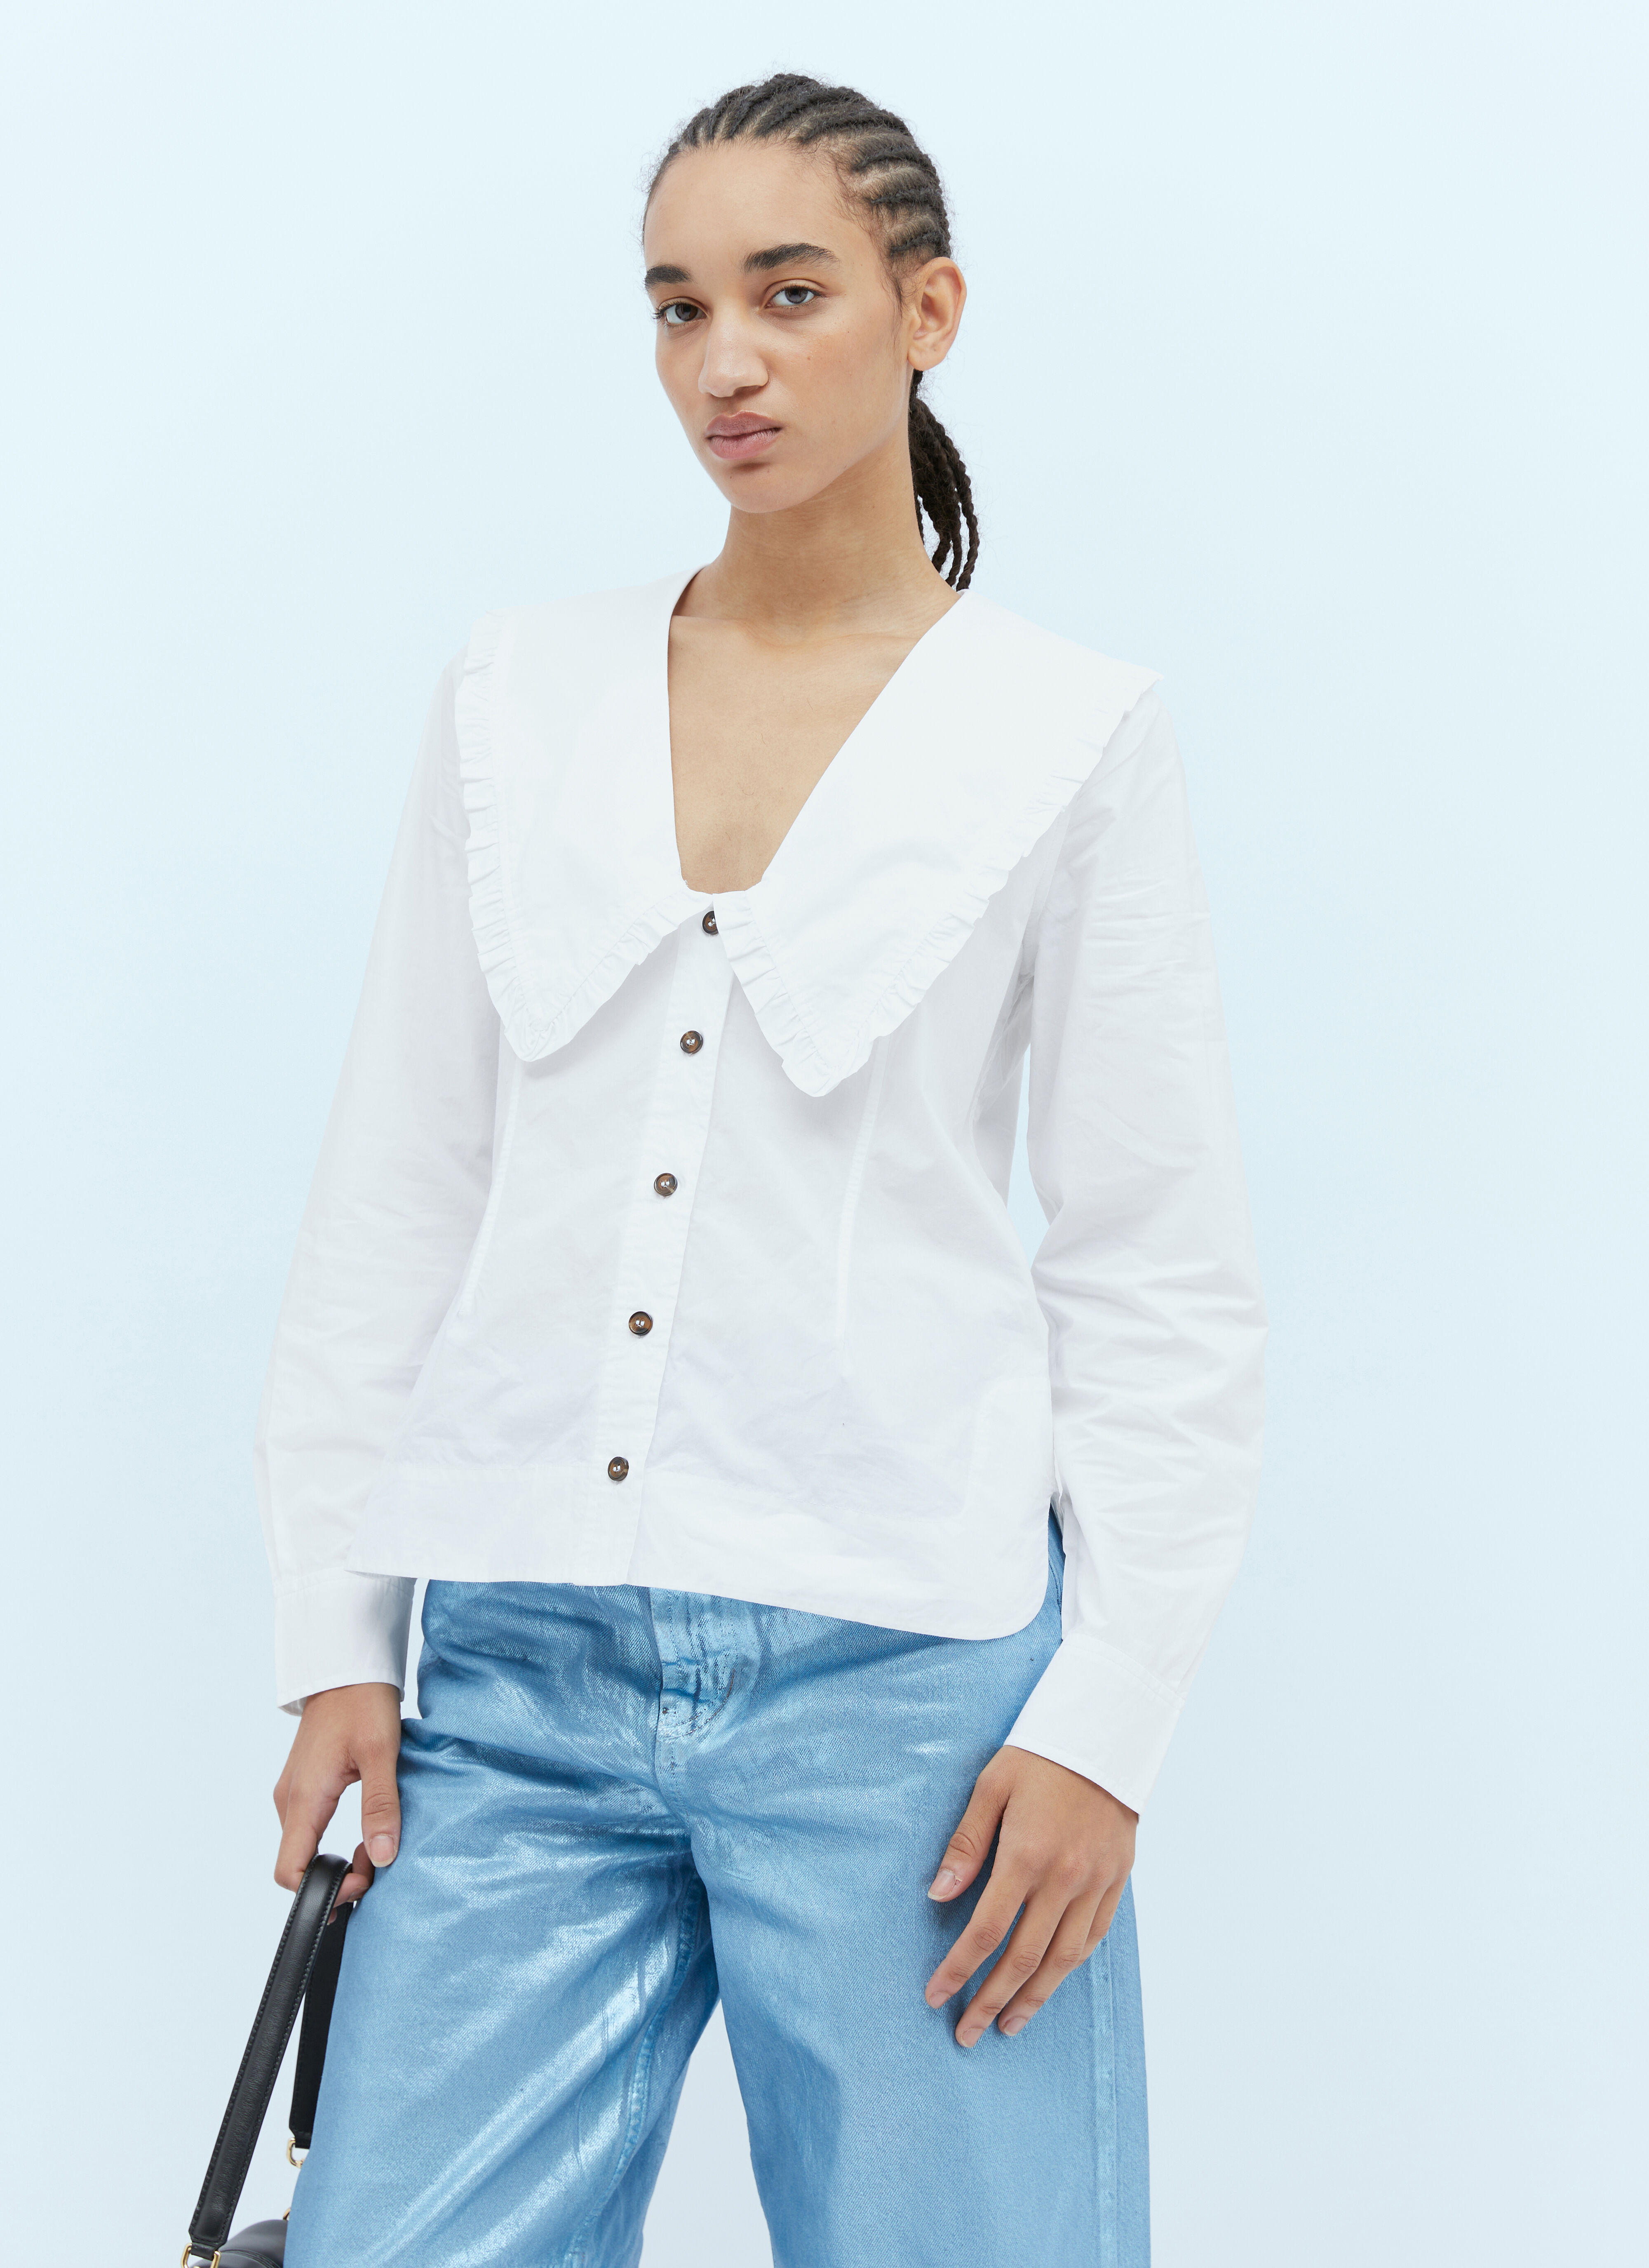 DRx x STEFAN MEIER x LN-CC Chelsea Collar Cotton Shirt Multicolour drs0350004